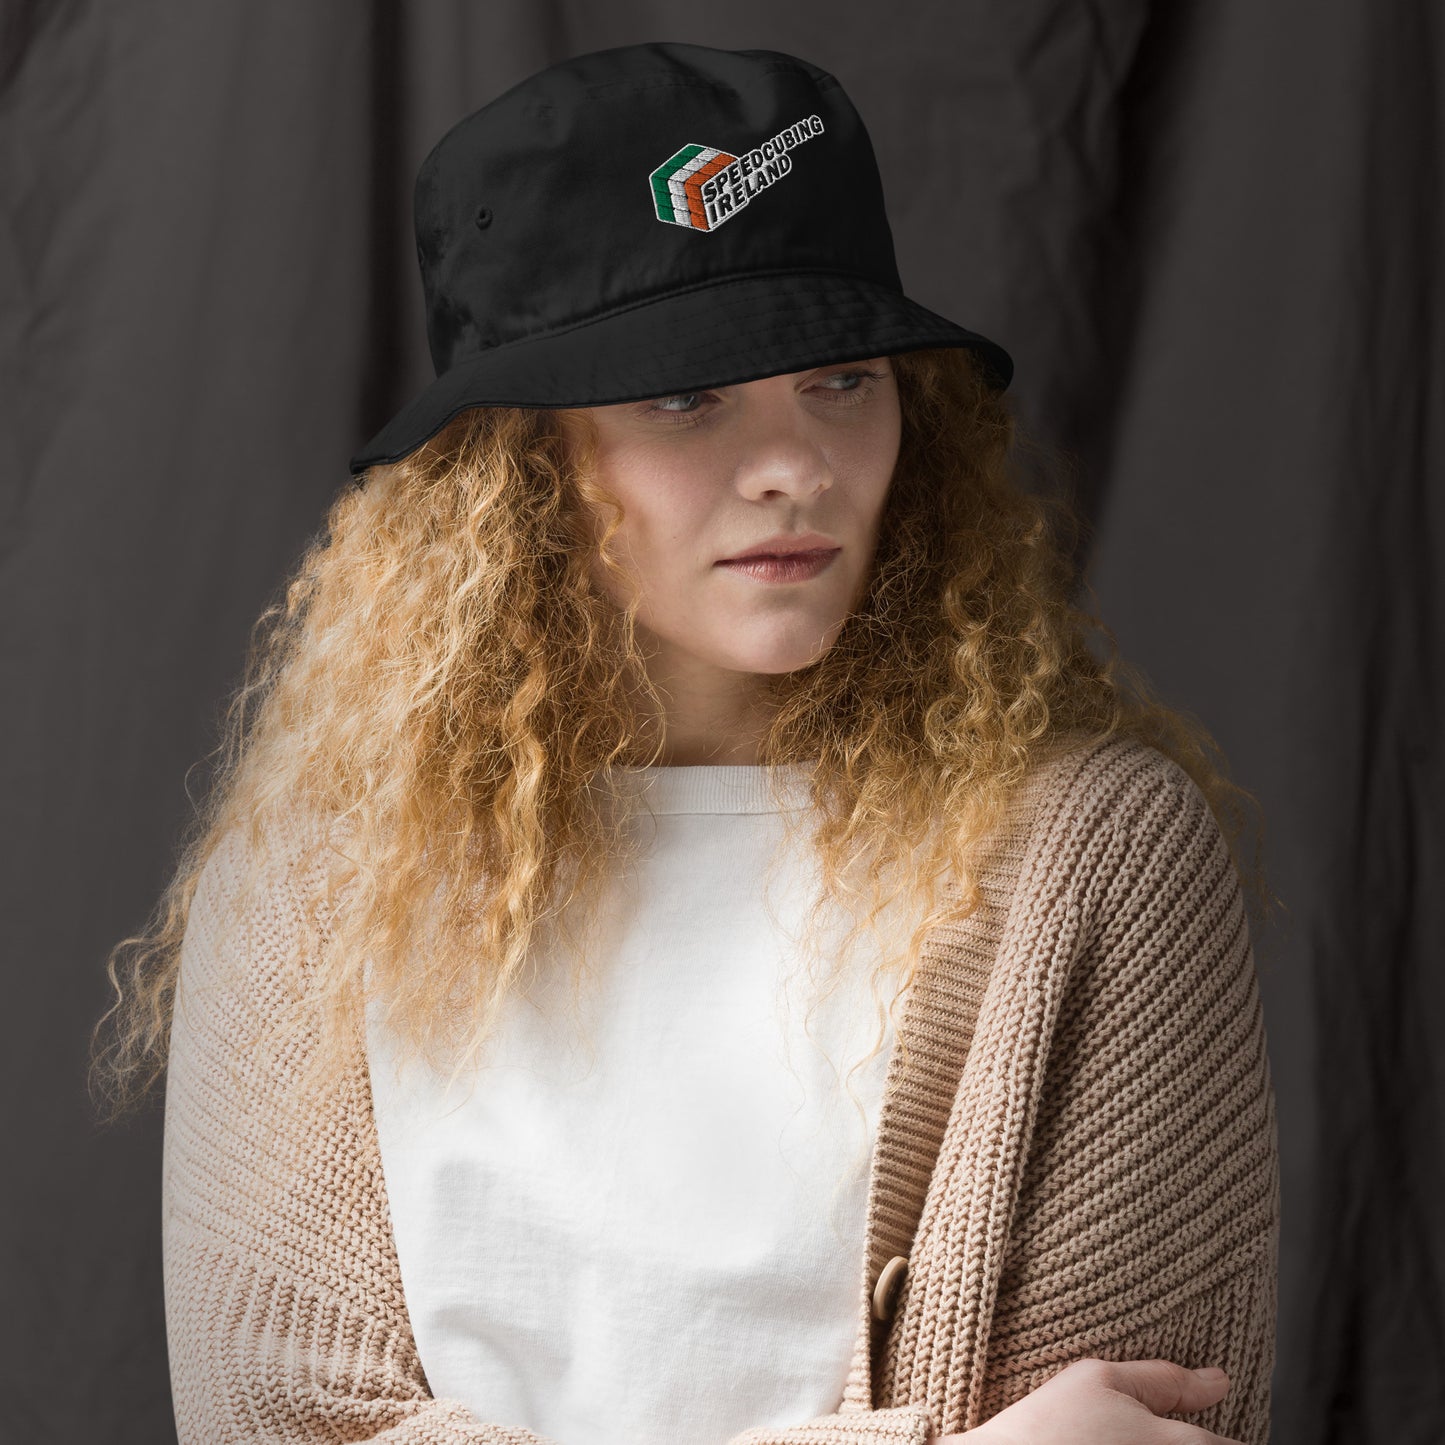 Embroidered Bucket Hat | Speedcubing Ireland